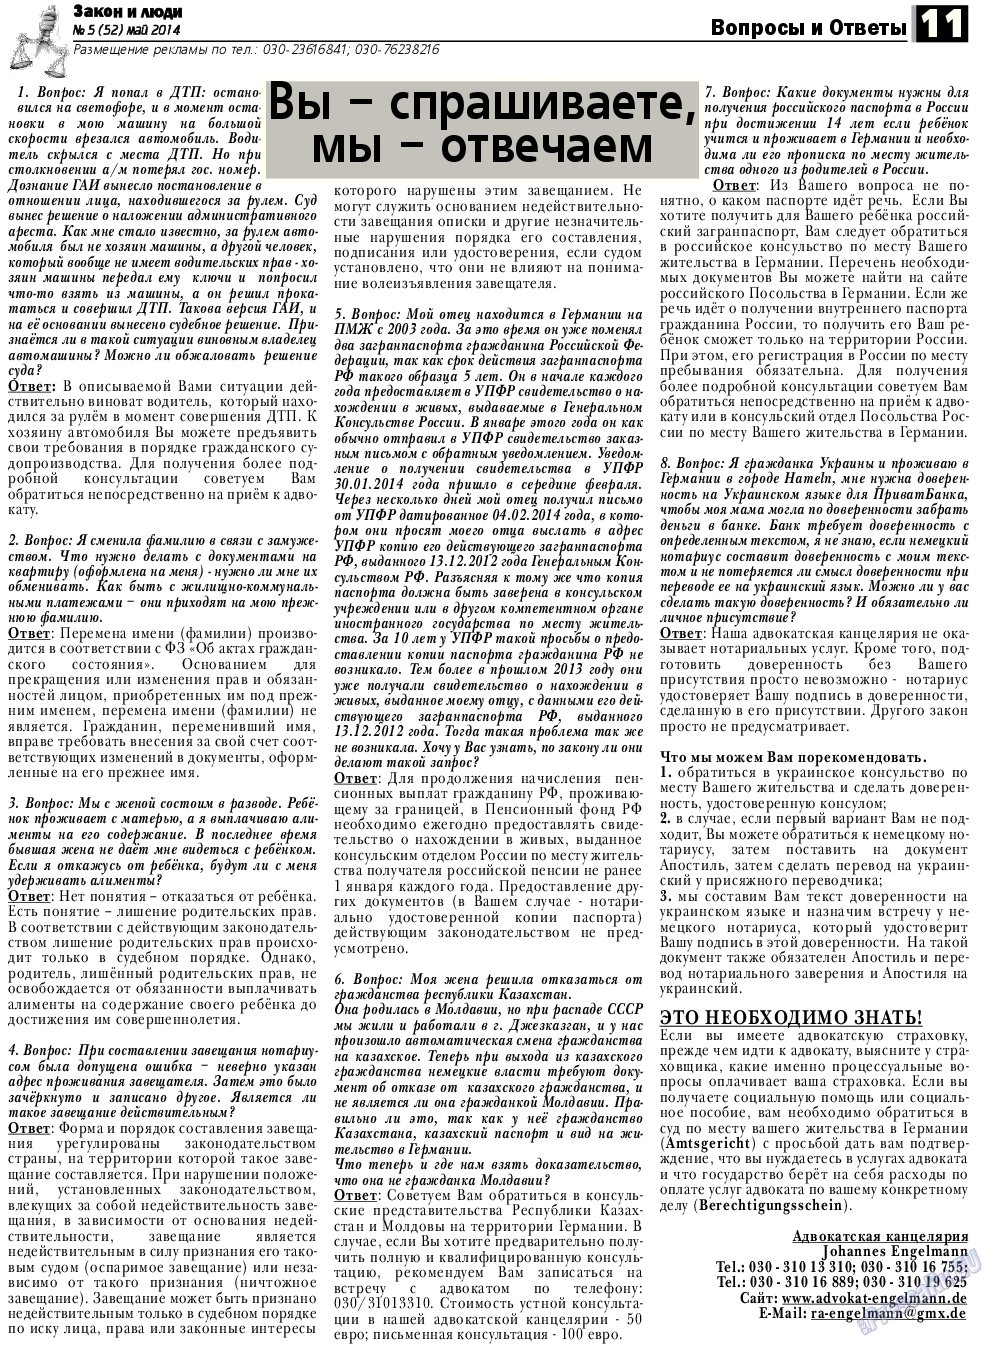 Закон и люди, газета. 2014 №5 стр.11